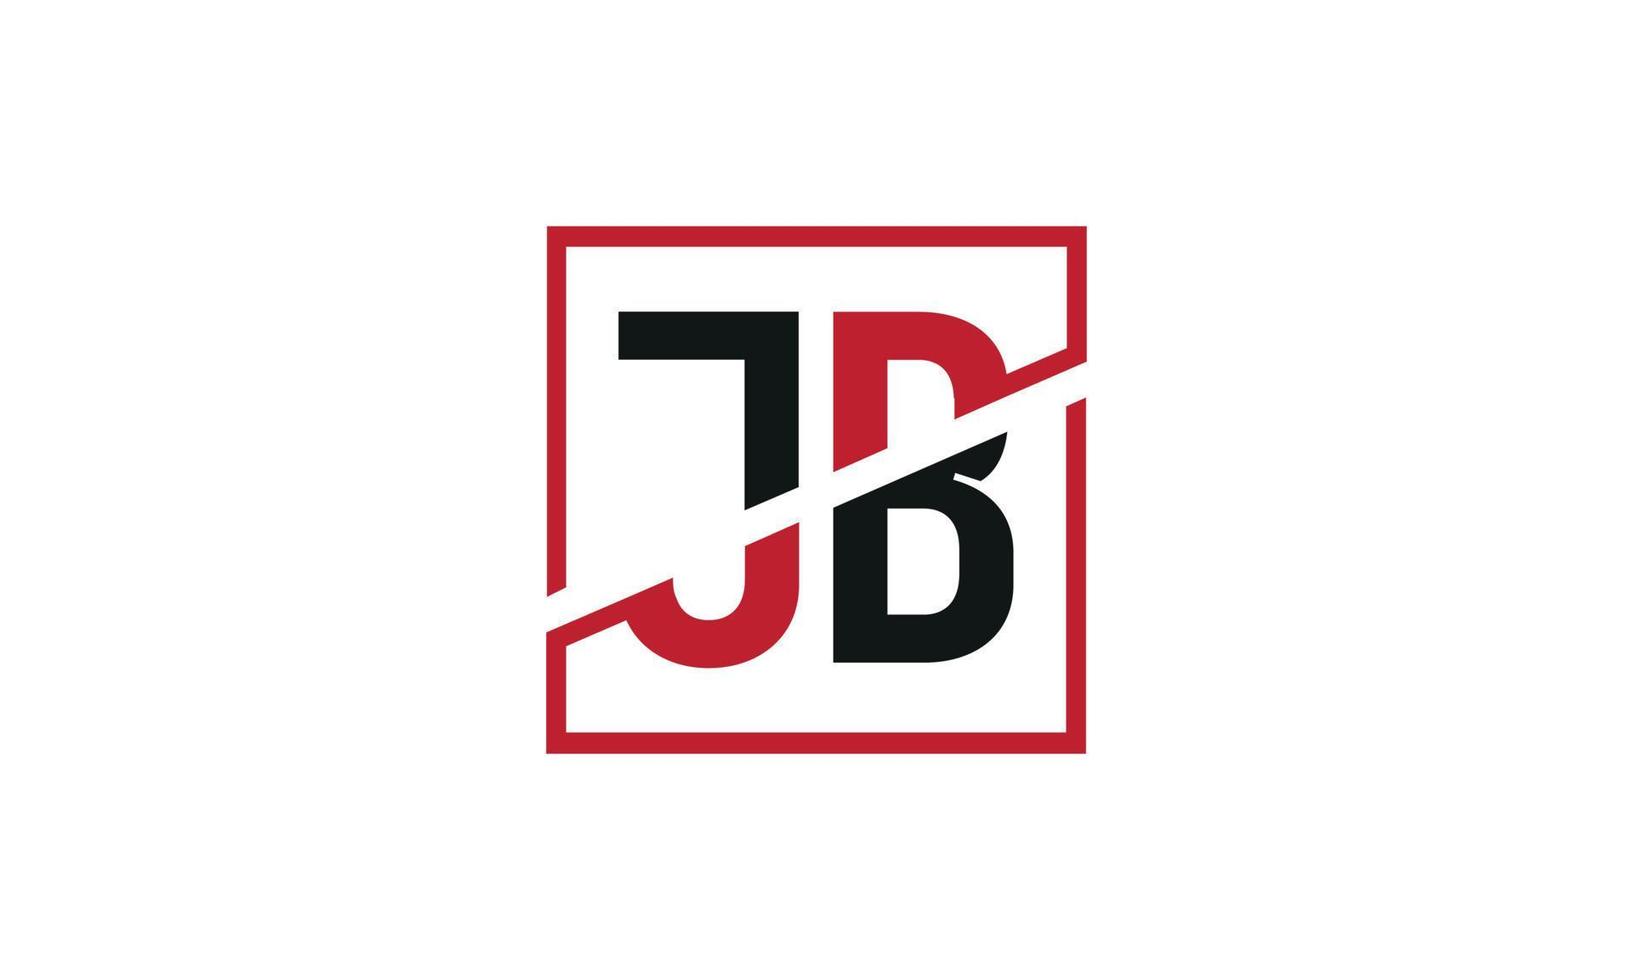 brief jb logo pro vector het dossier pro vector